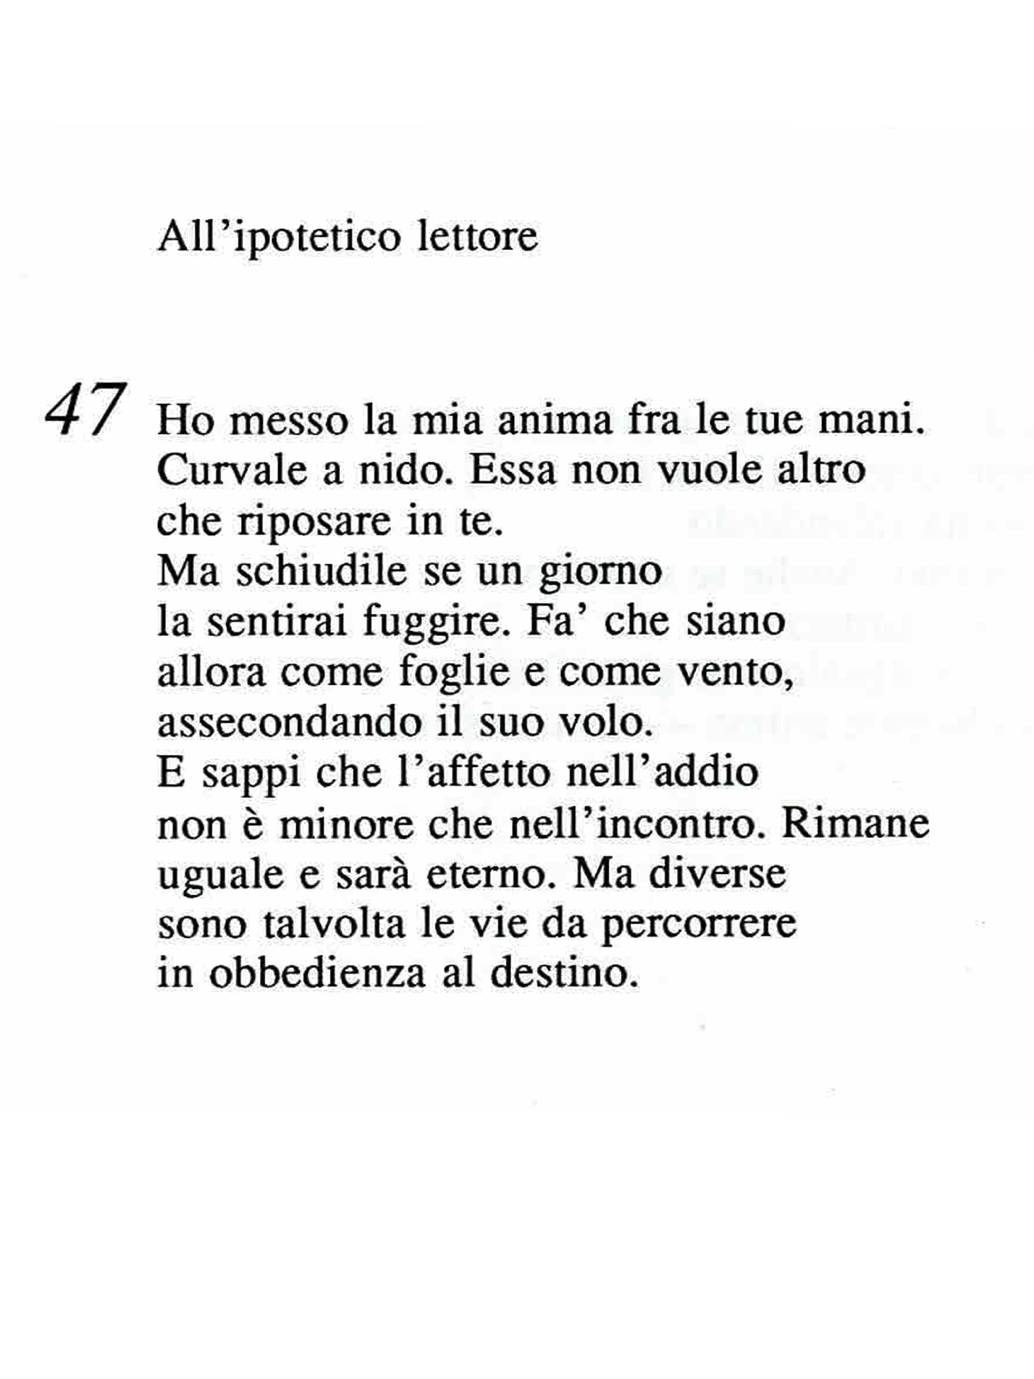 Poesia Anelli Del Tempo Allipotetico Lettore1